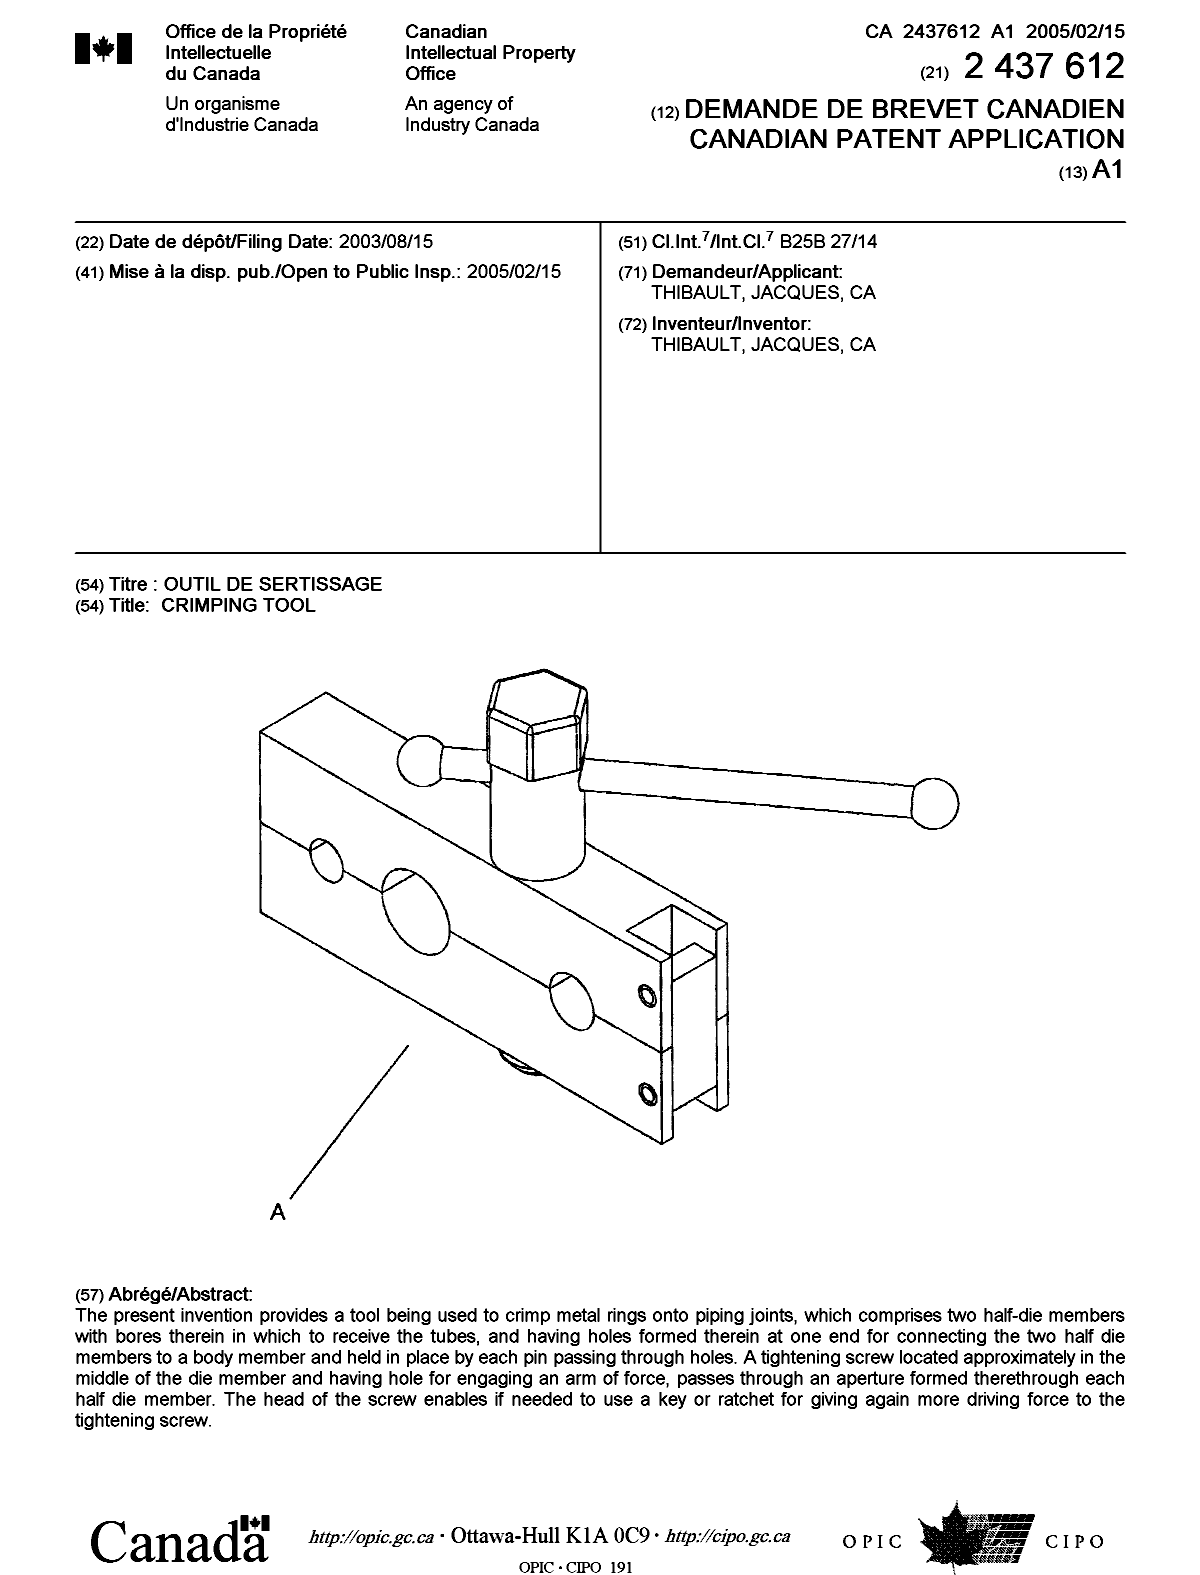 Document de brevet canadien 2437612. Page couverture 20041203. Image 1 de 1